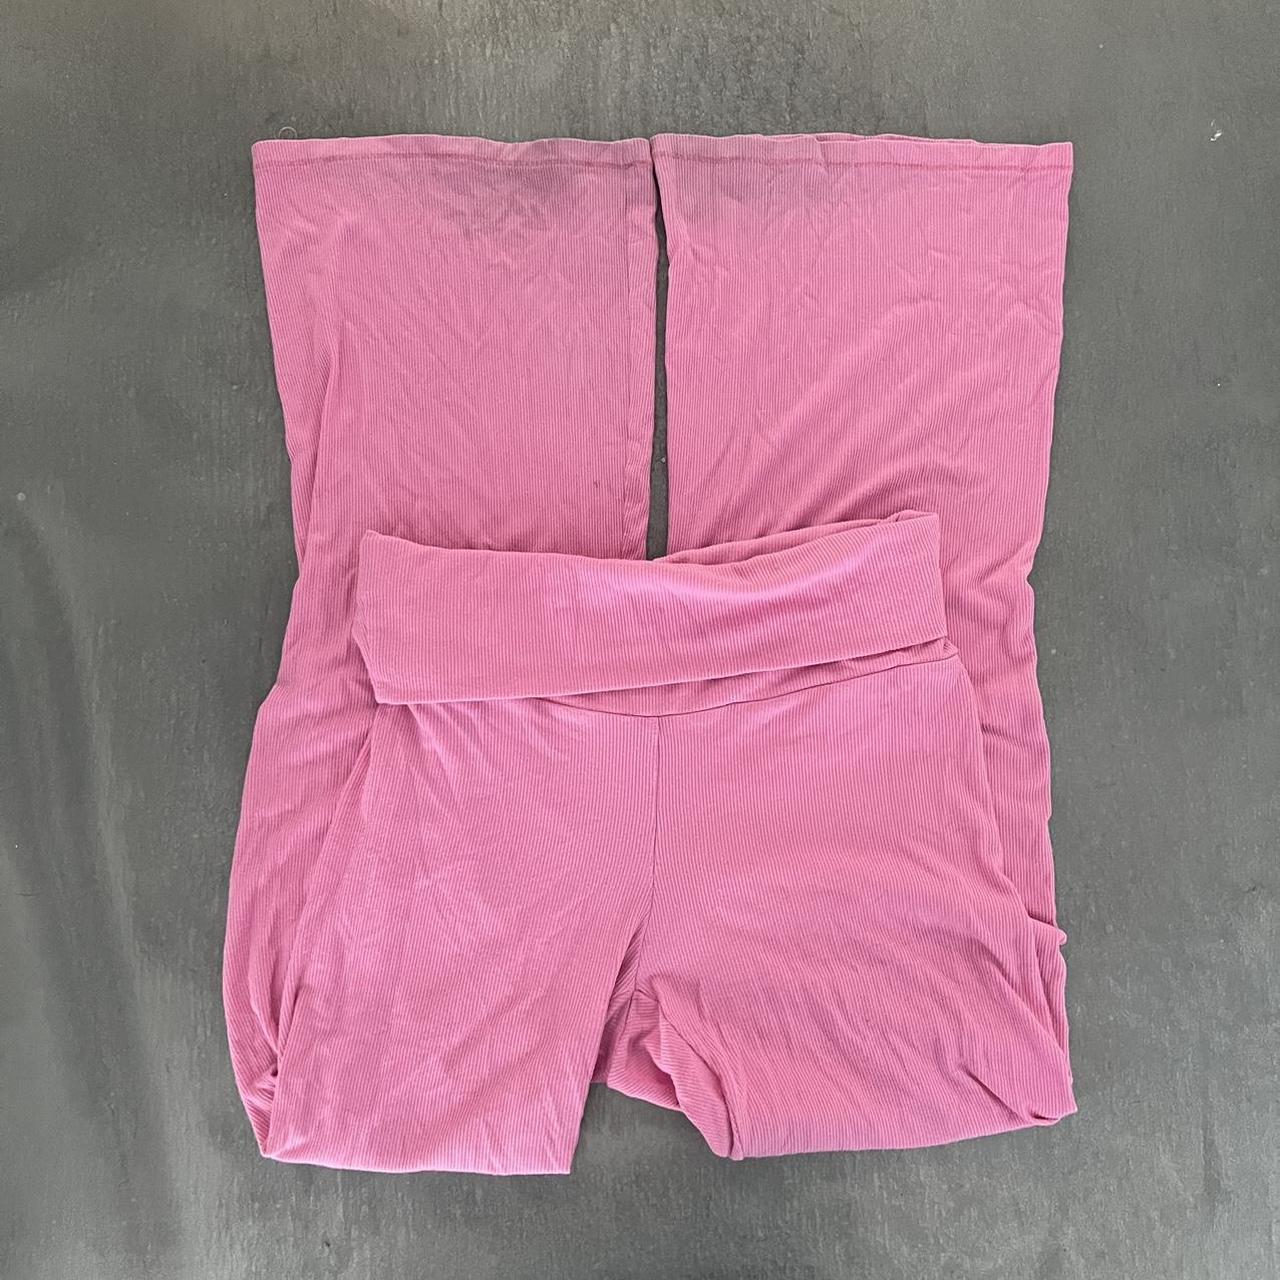 Skims Women's Pink Trousers | Depop